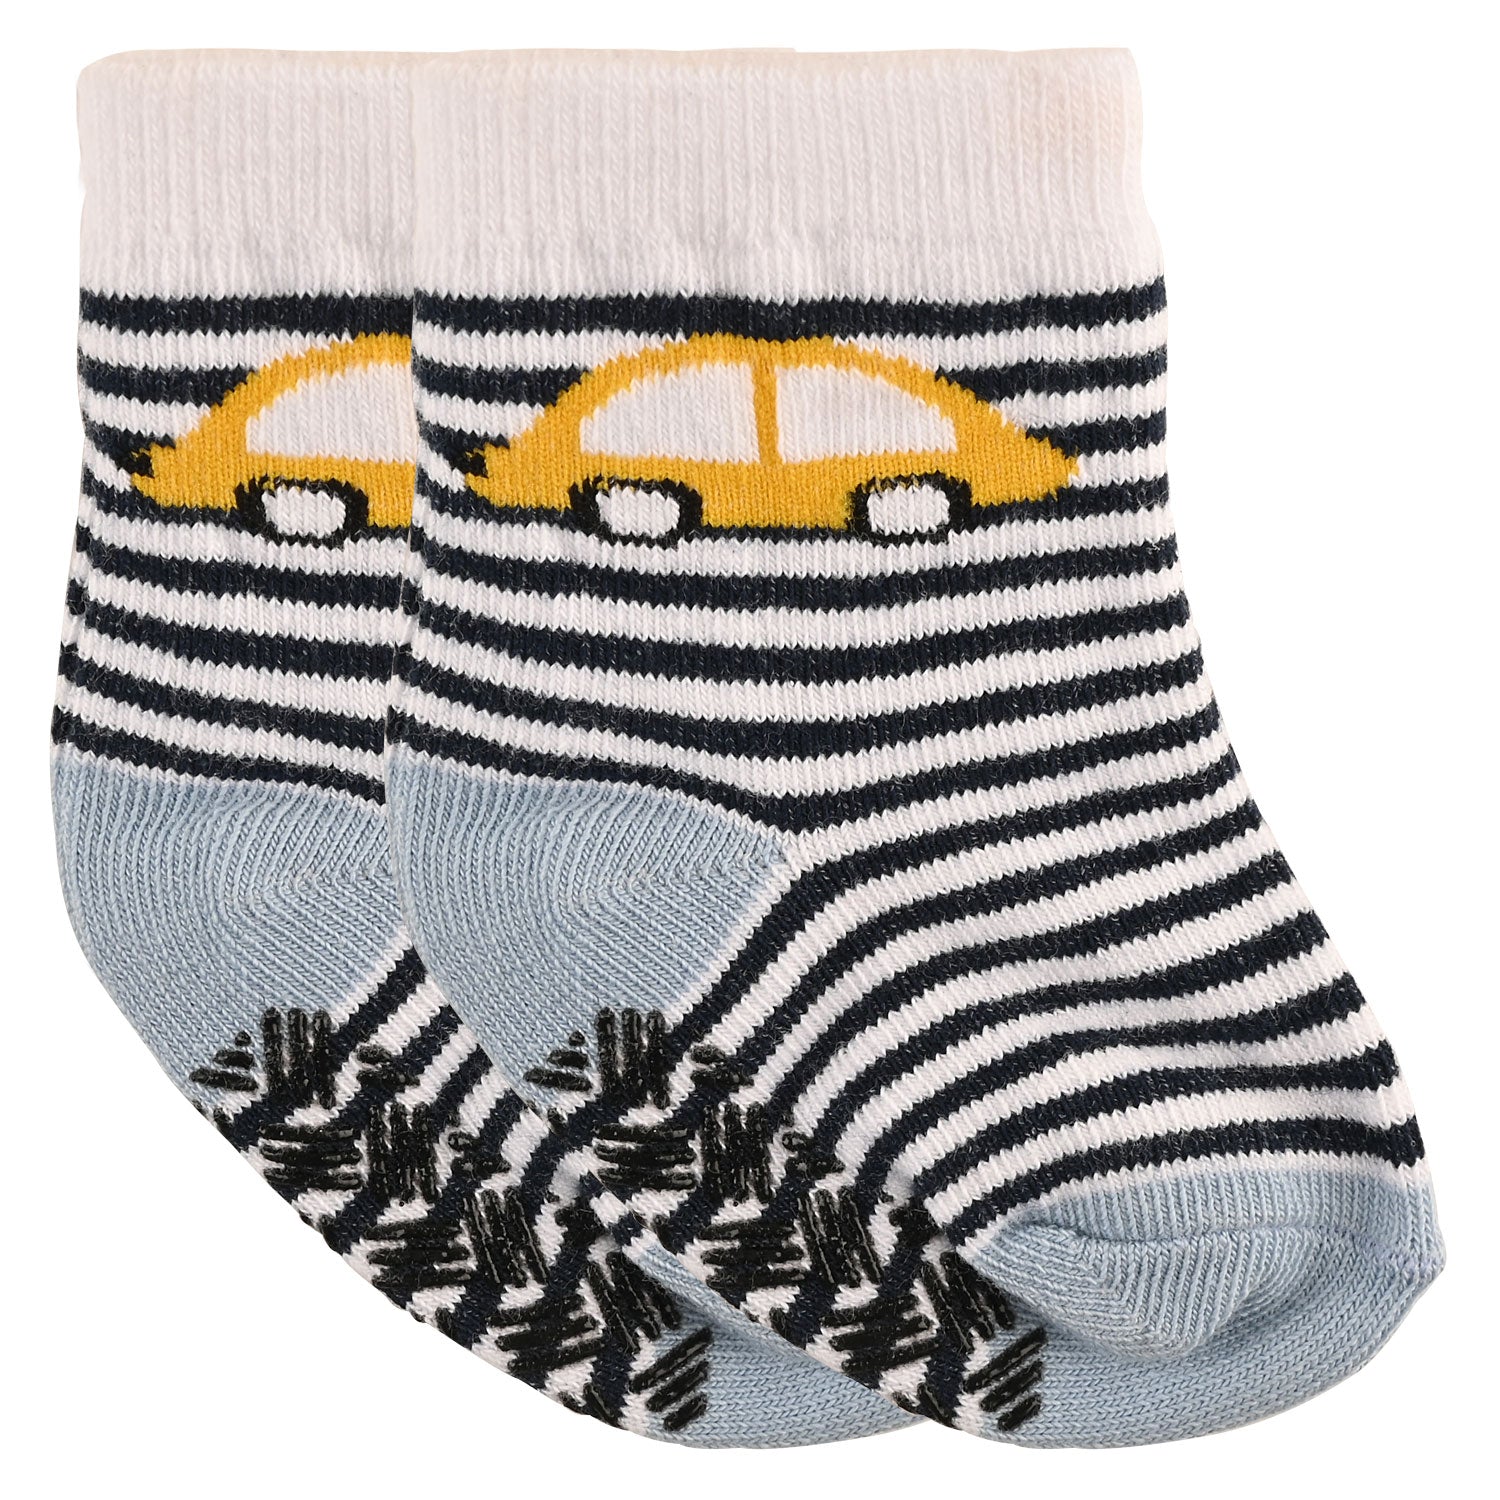 Infant Boys Socks ( Pack of 3 )